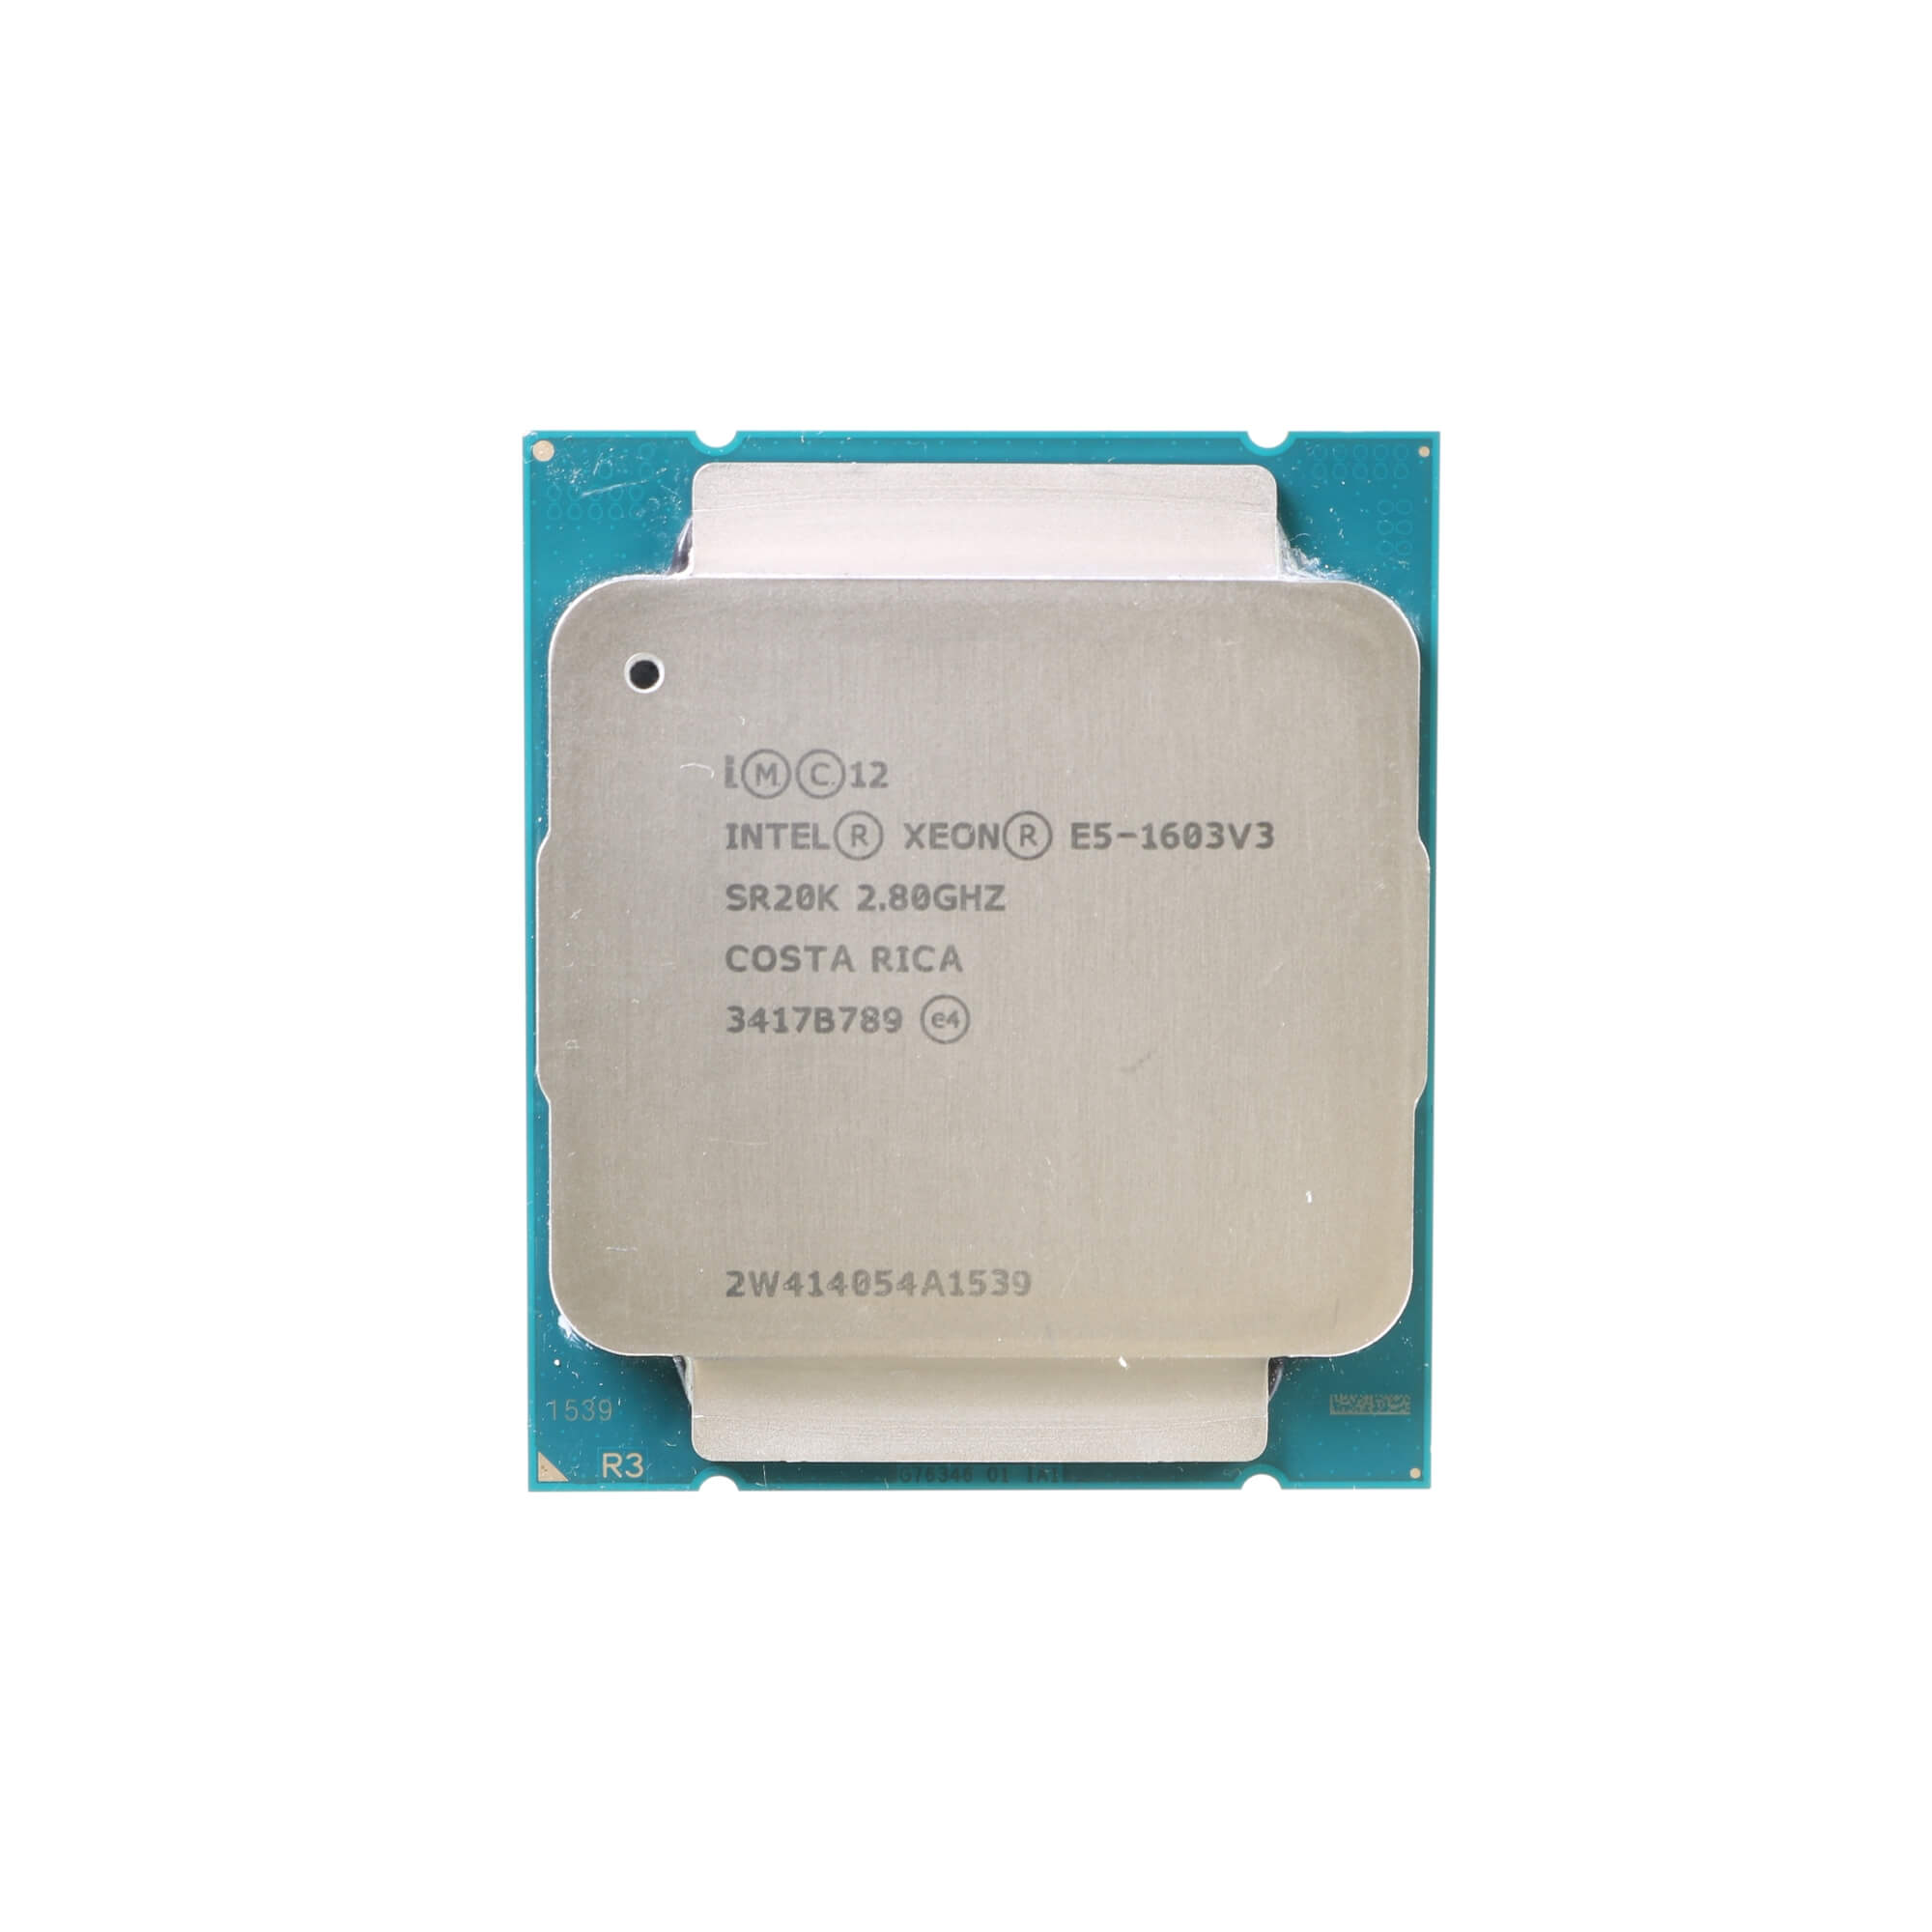 Intel Xeon E5-1603 V3 CPU Processor Core 2.80GHZ SR20K